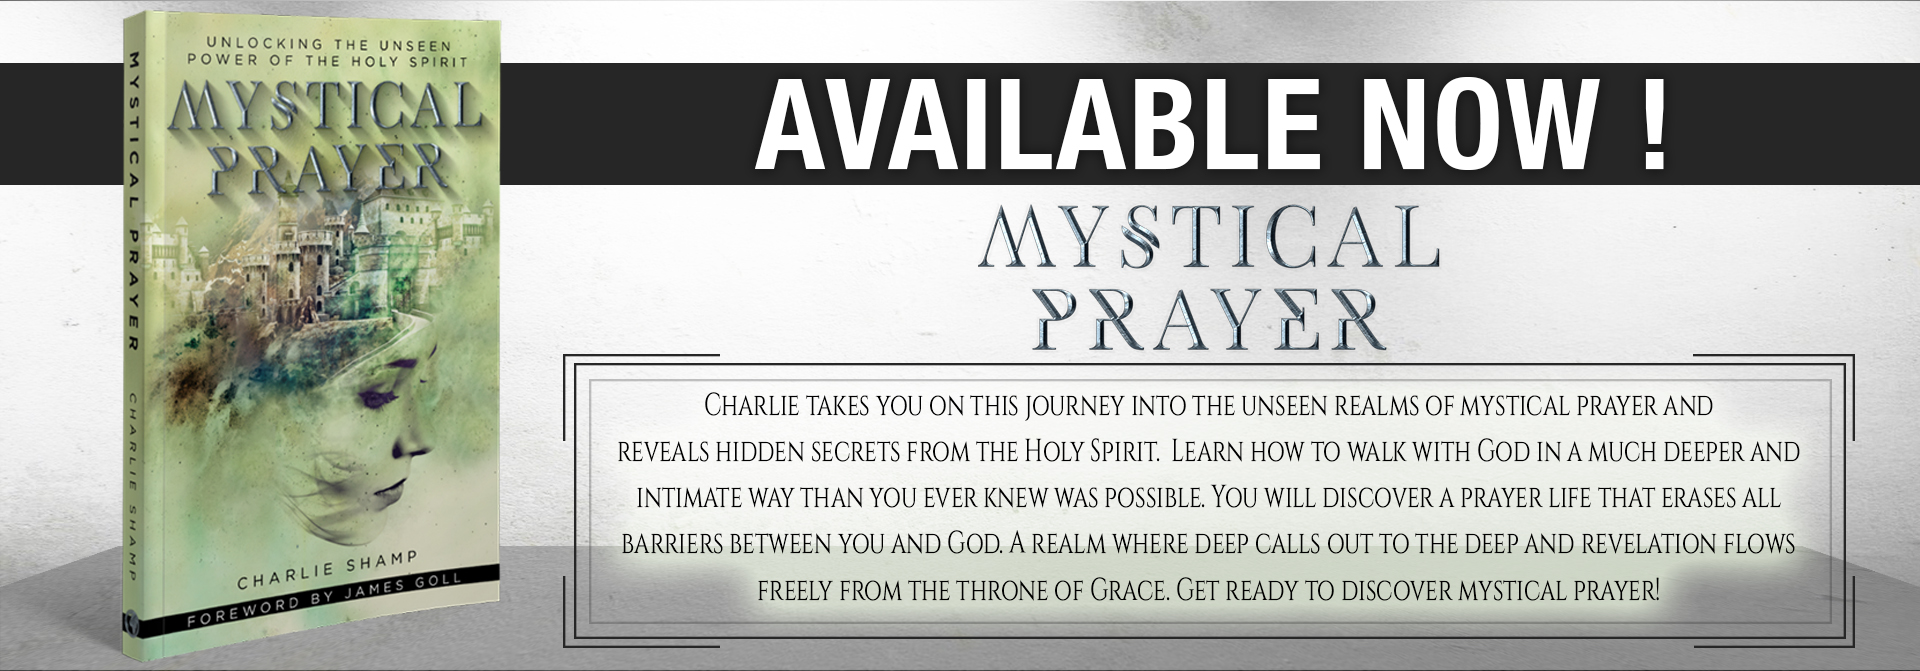 Mystical Prayer Available Now.jpg